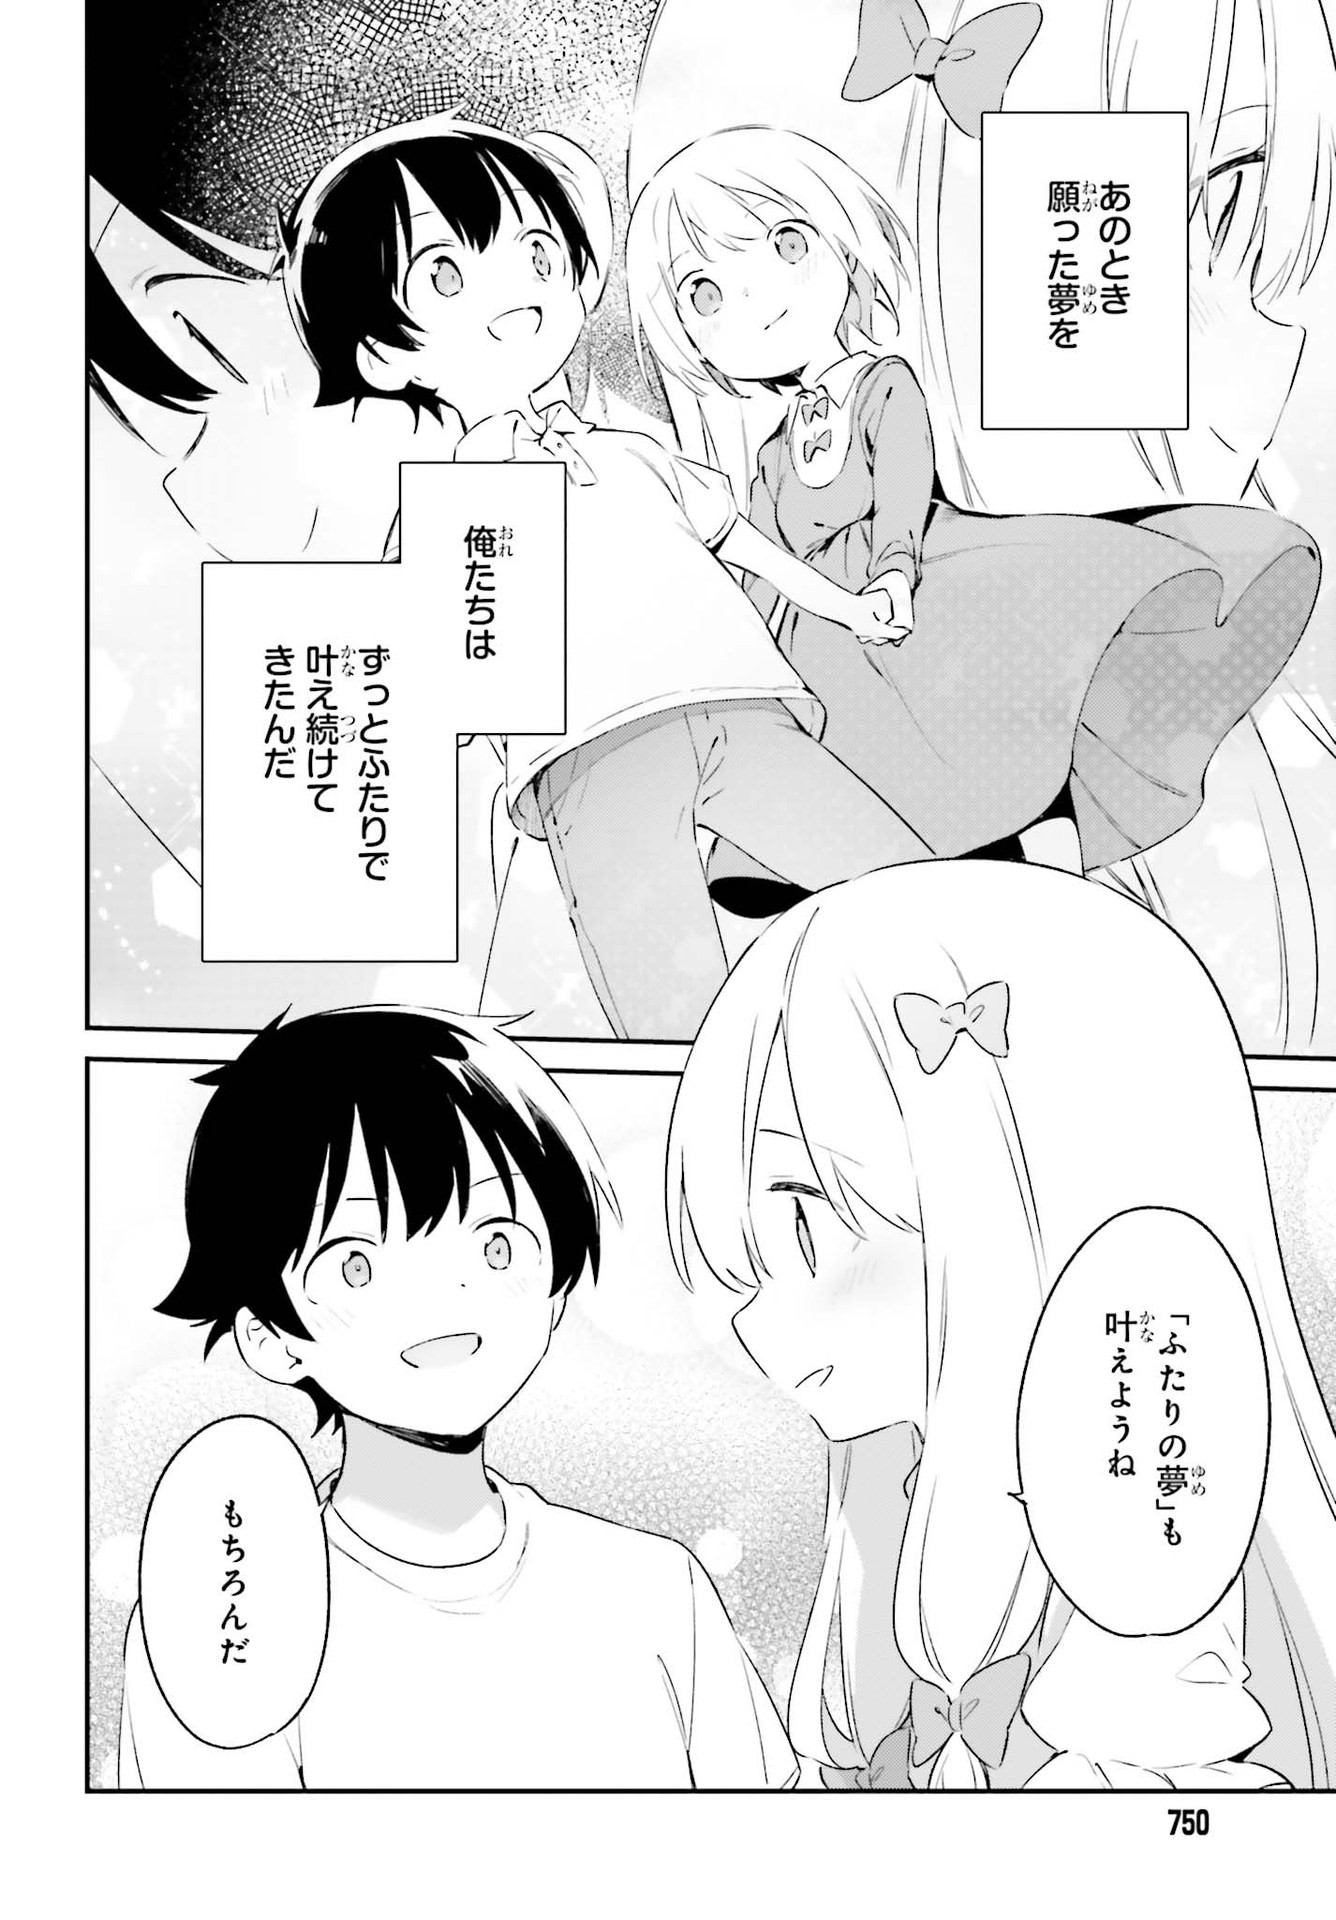 Ero Manga Sensei - Chapter 77 - Page 36